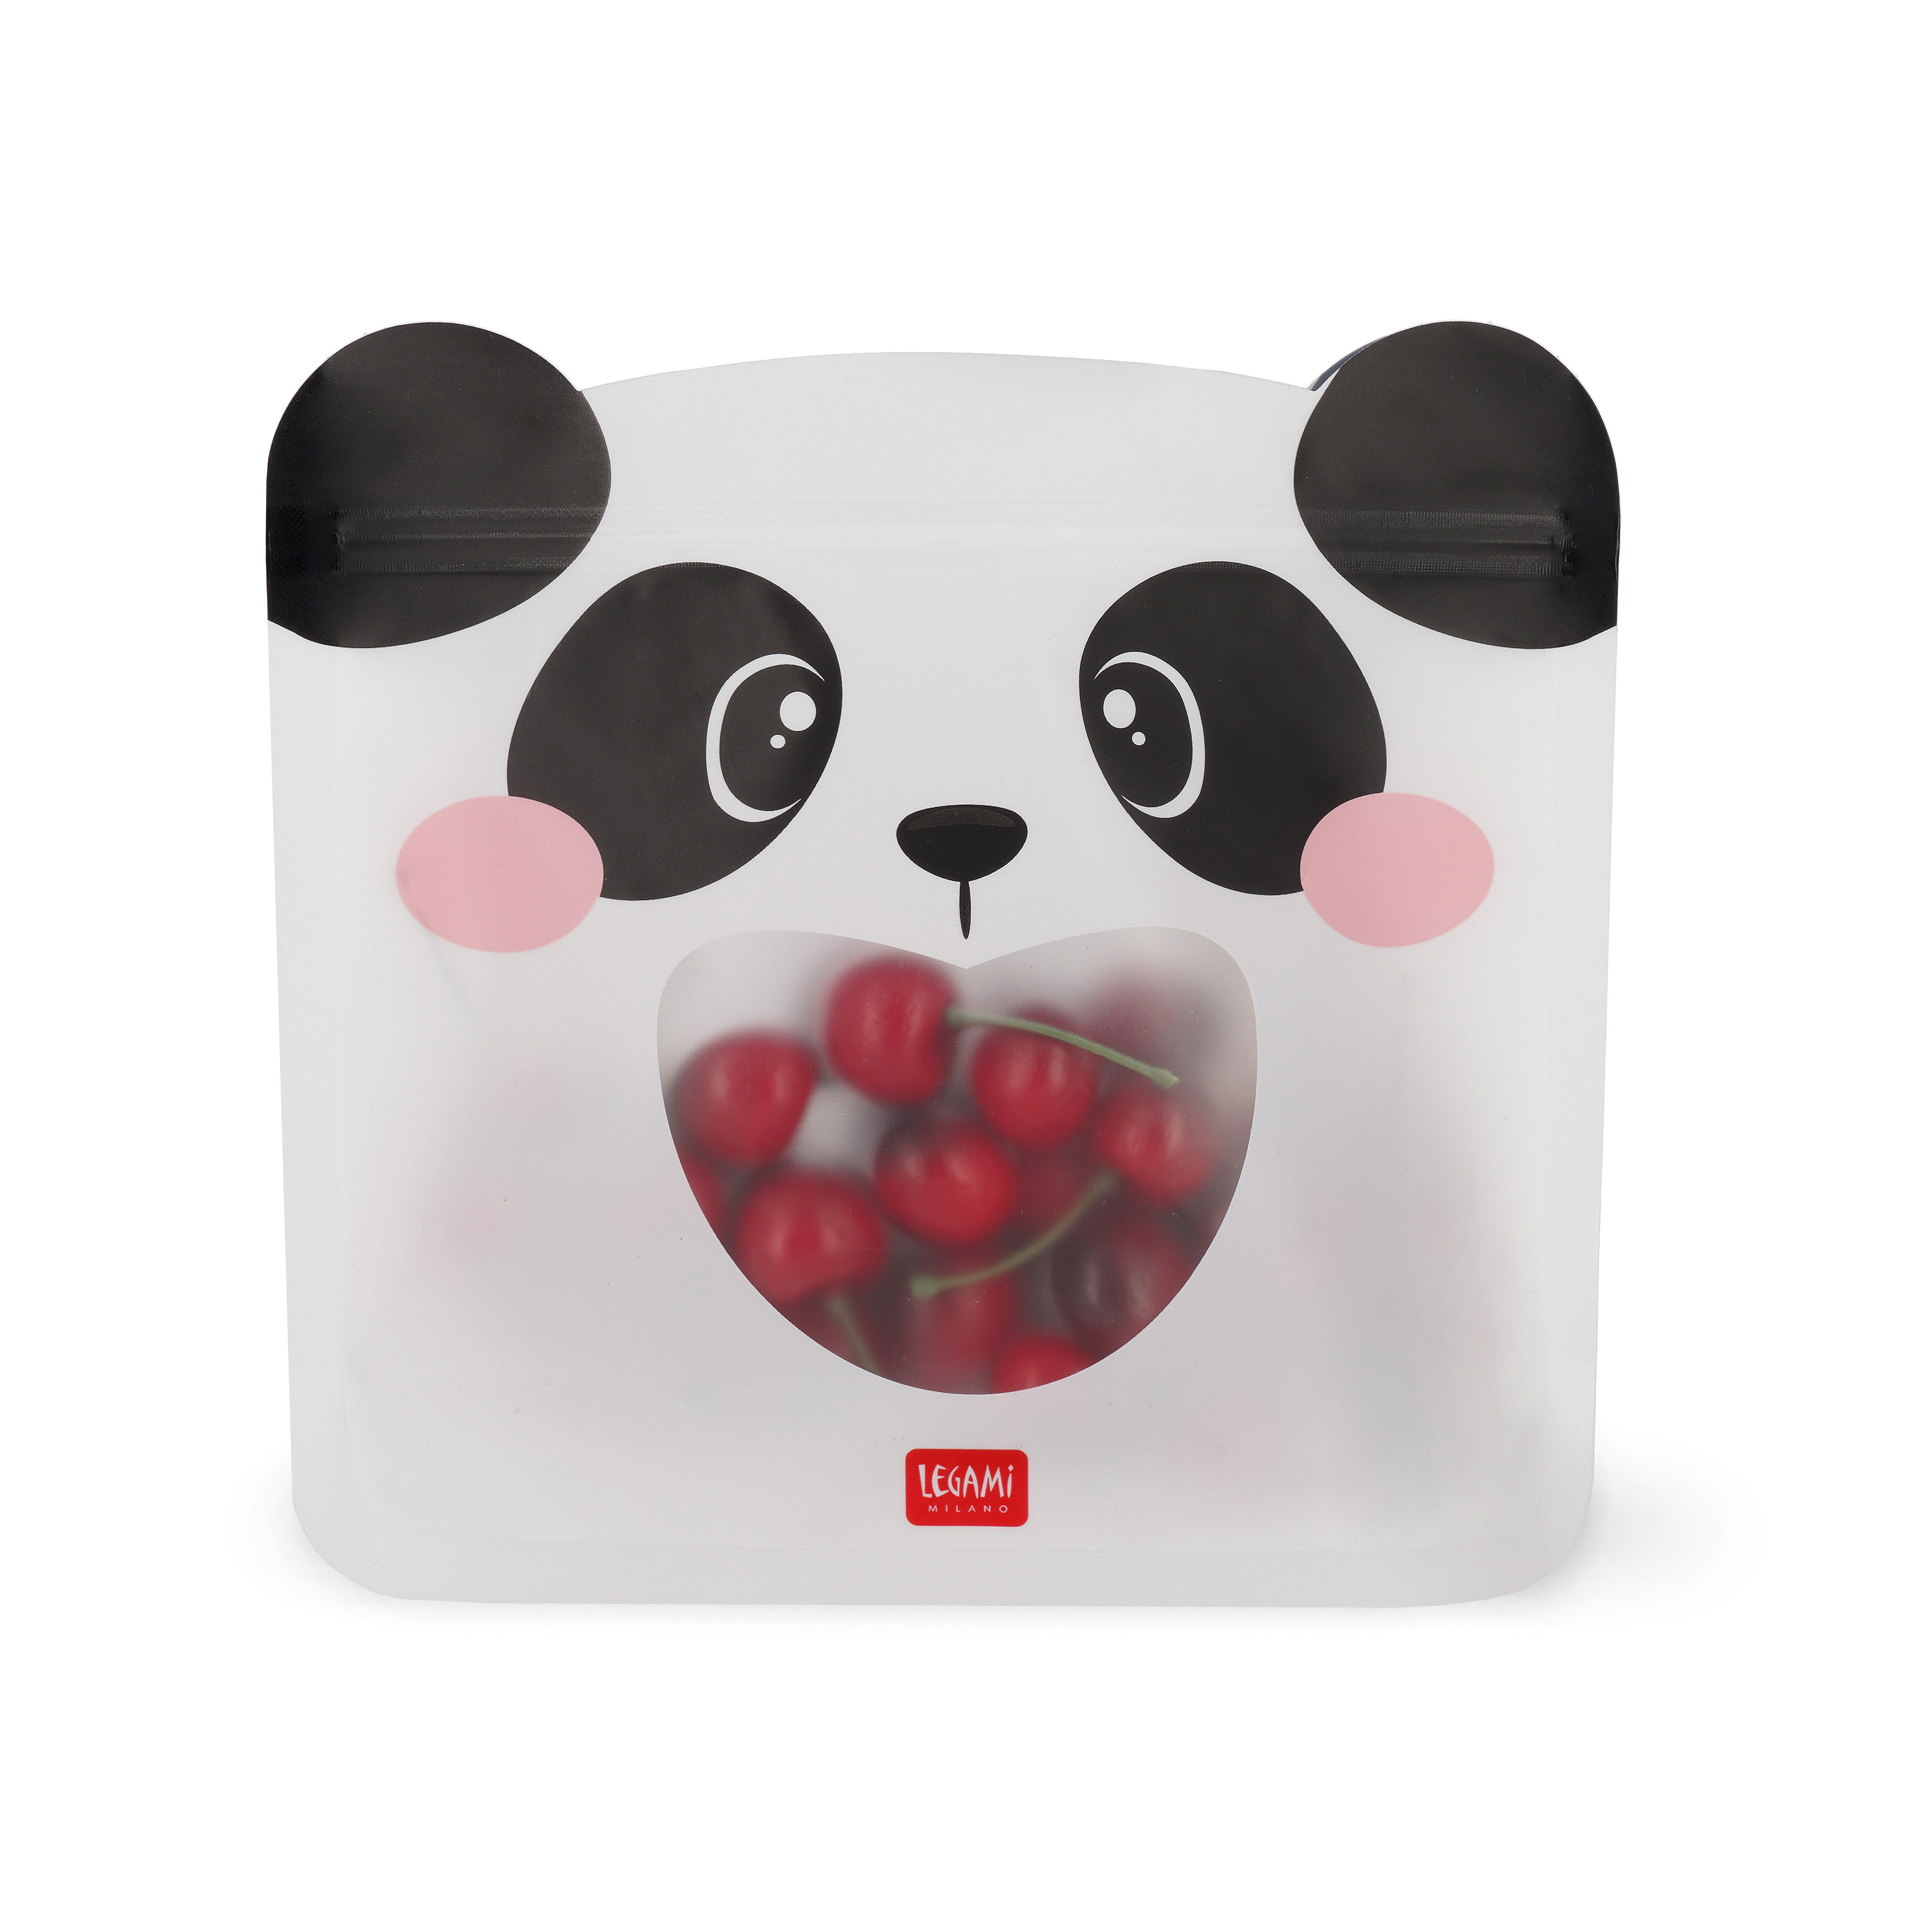 Legami Sada opätovne použiteľných vreciek na potraviny Panda 3 ks